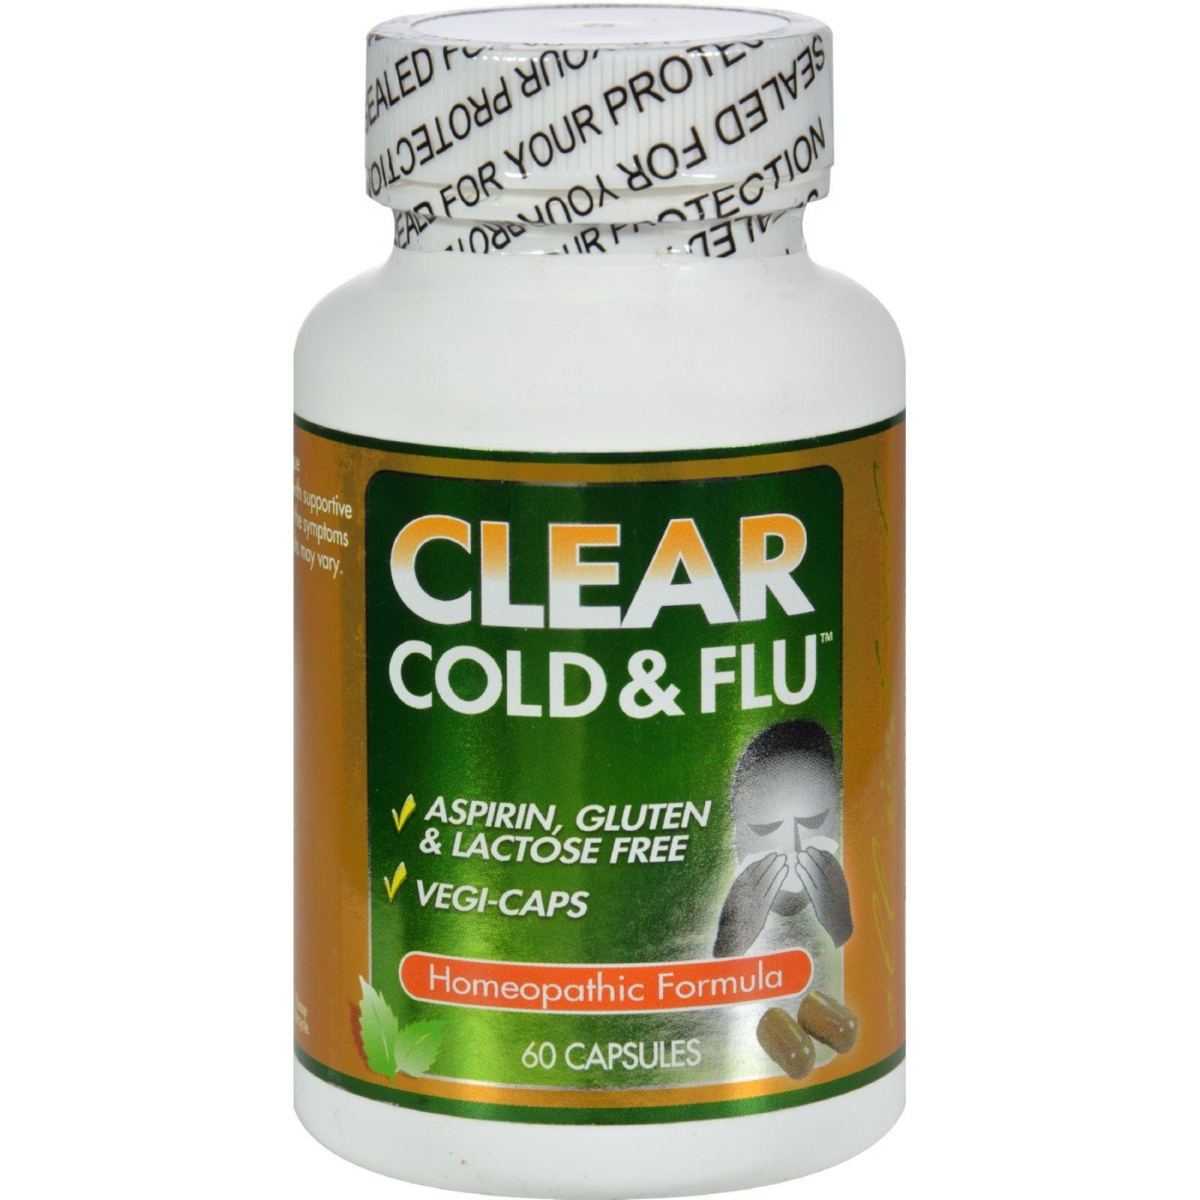 Hg0961029 Clear Cold & Flu - 60 Capsules